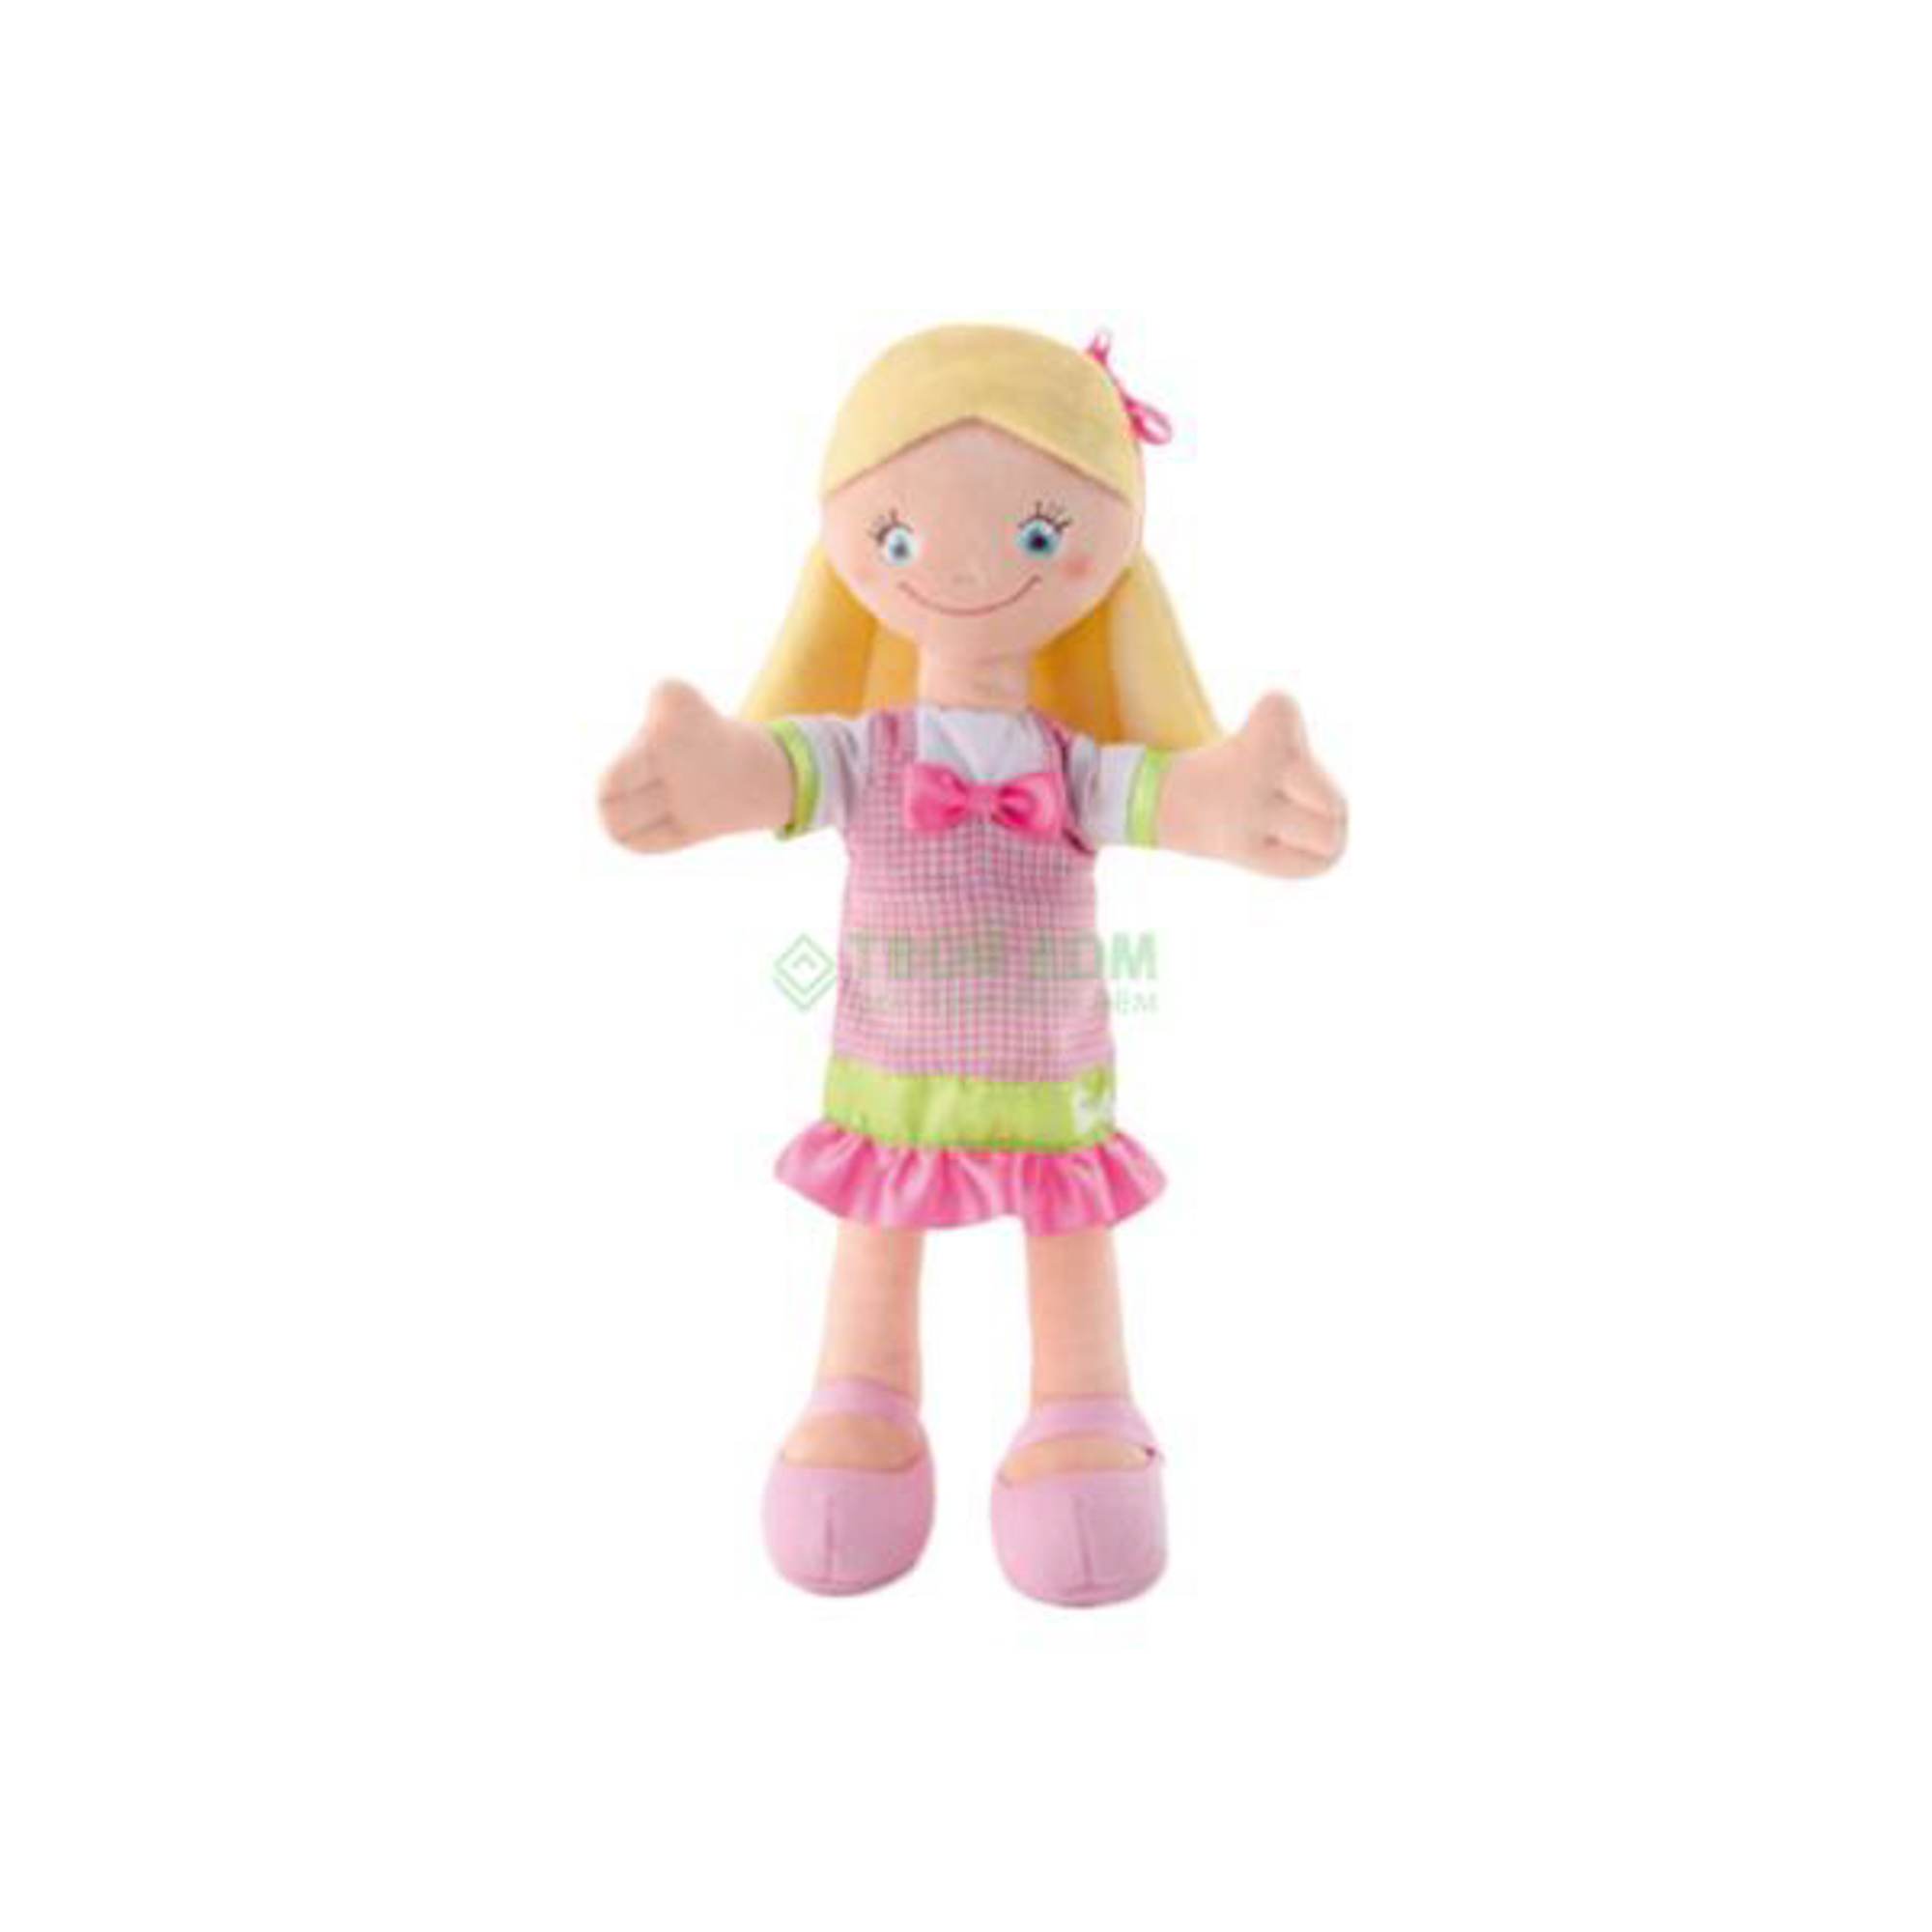 фото Кукла trudi кукла в розовом платье с бантом